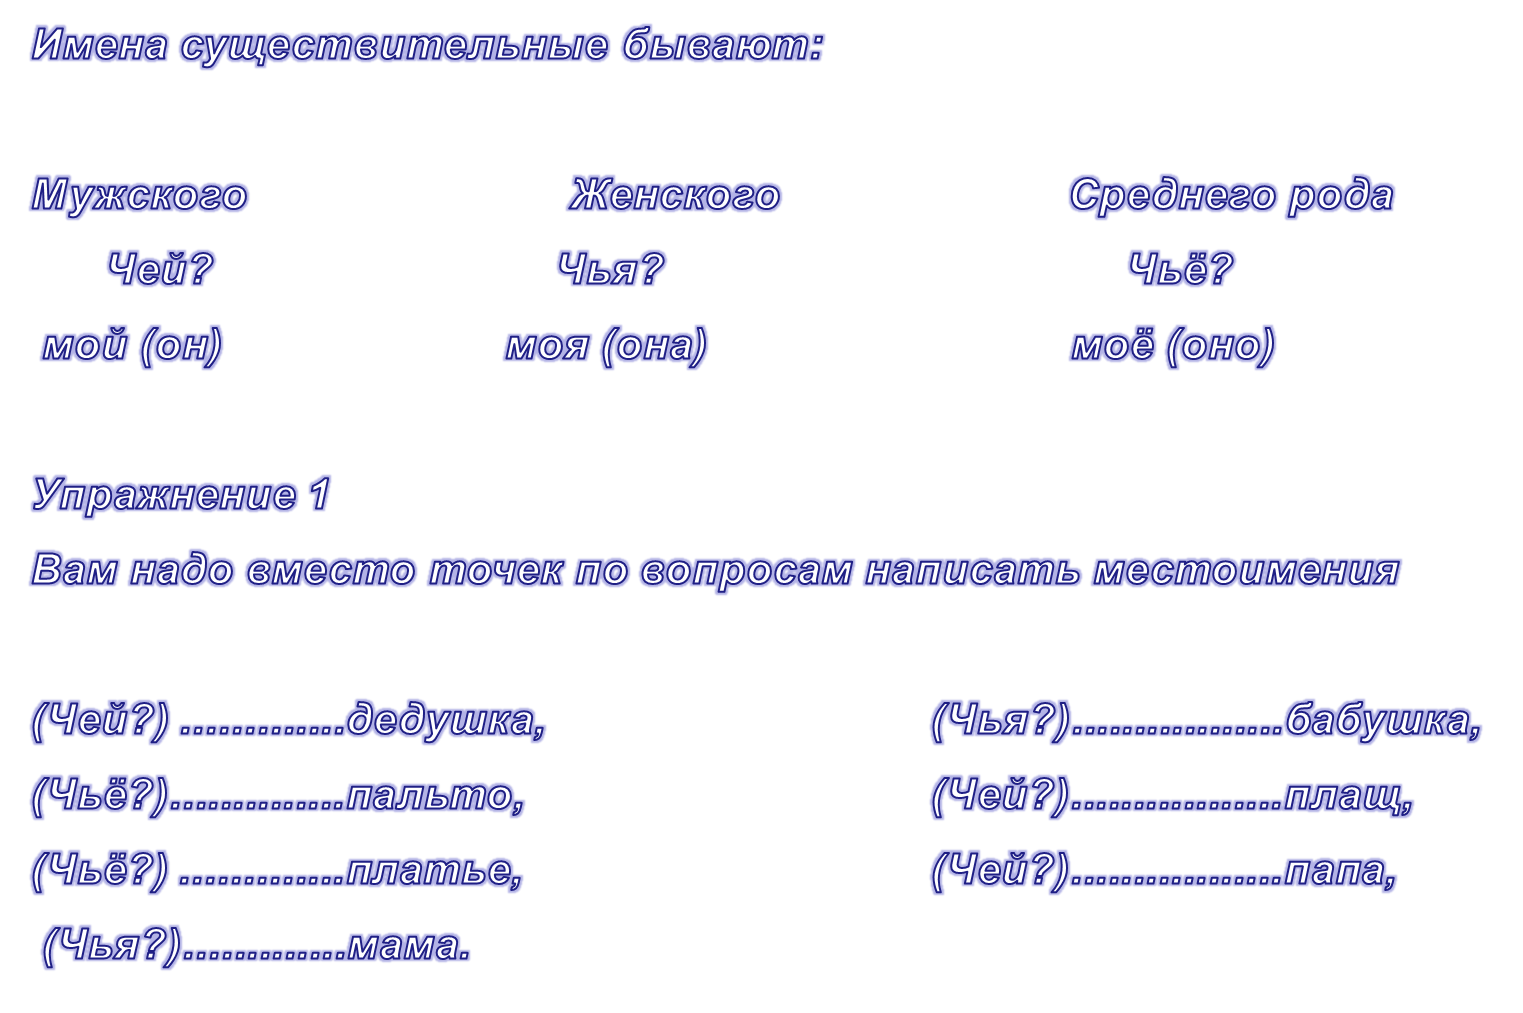 Панорамный урок по русскому языку: Лексическая тема урока: «Кто сильнее?» Грамматическая тема урока: Существительные м.р, ж,р. Местоимения он, она, они.